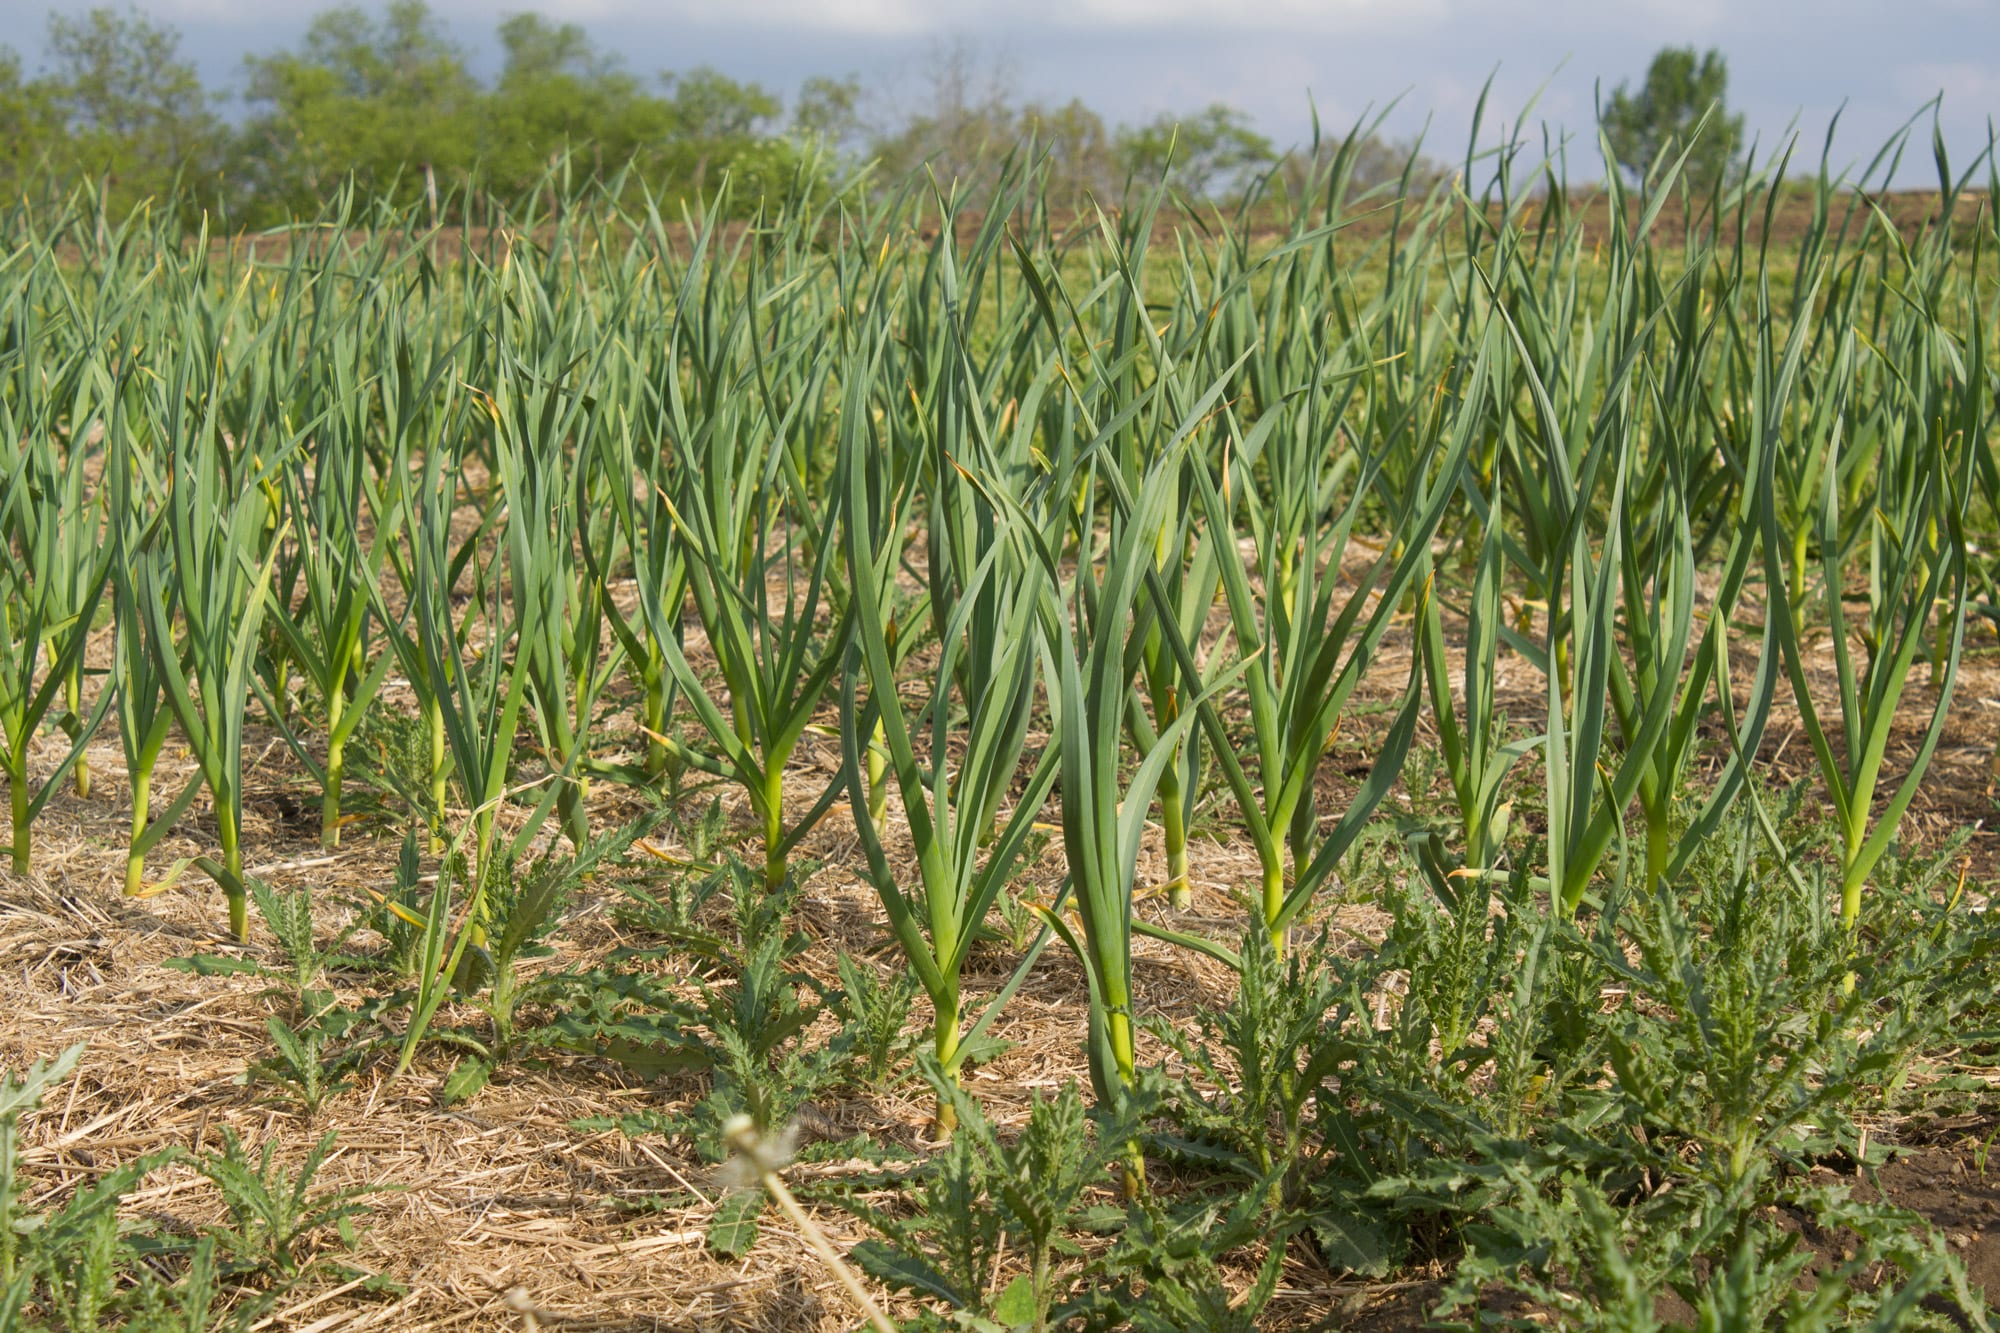 Rows of garlic